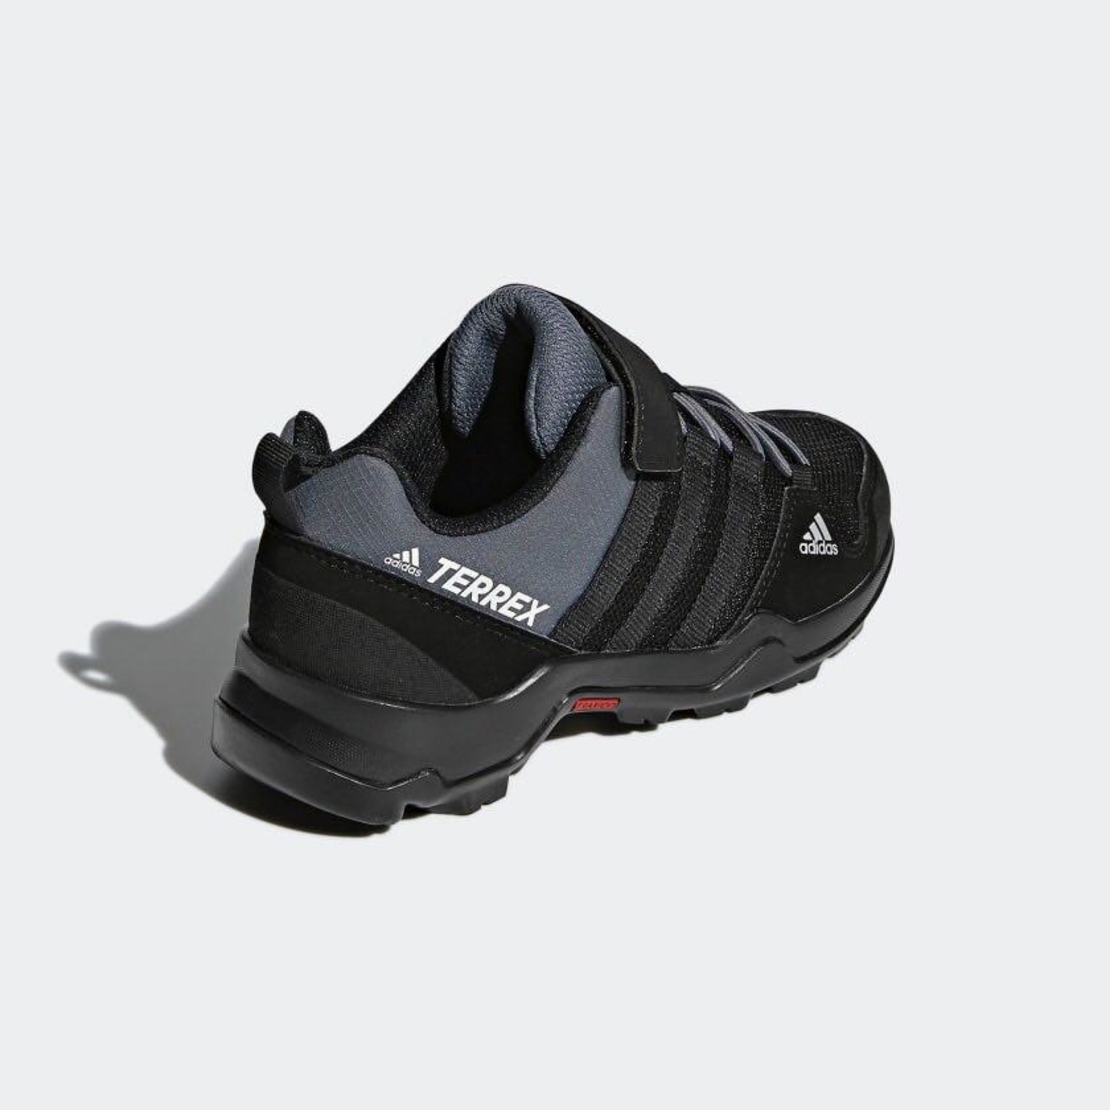 נעלי אדידס לילדים | Adidas Terrex Ax2r CF